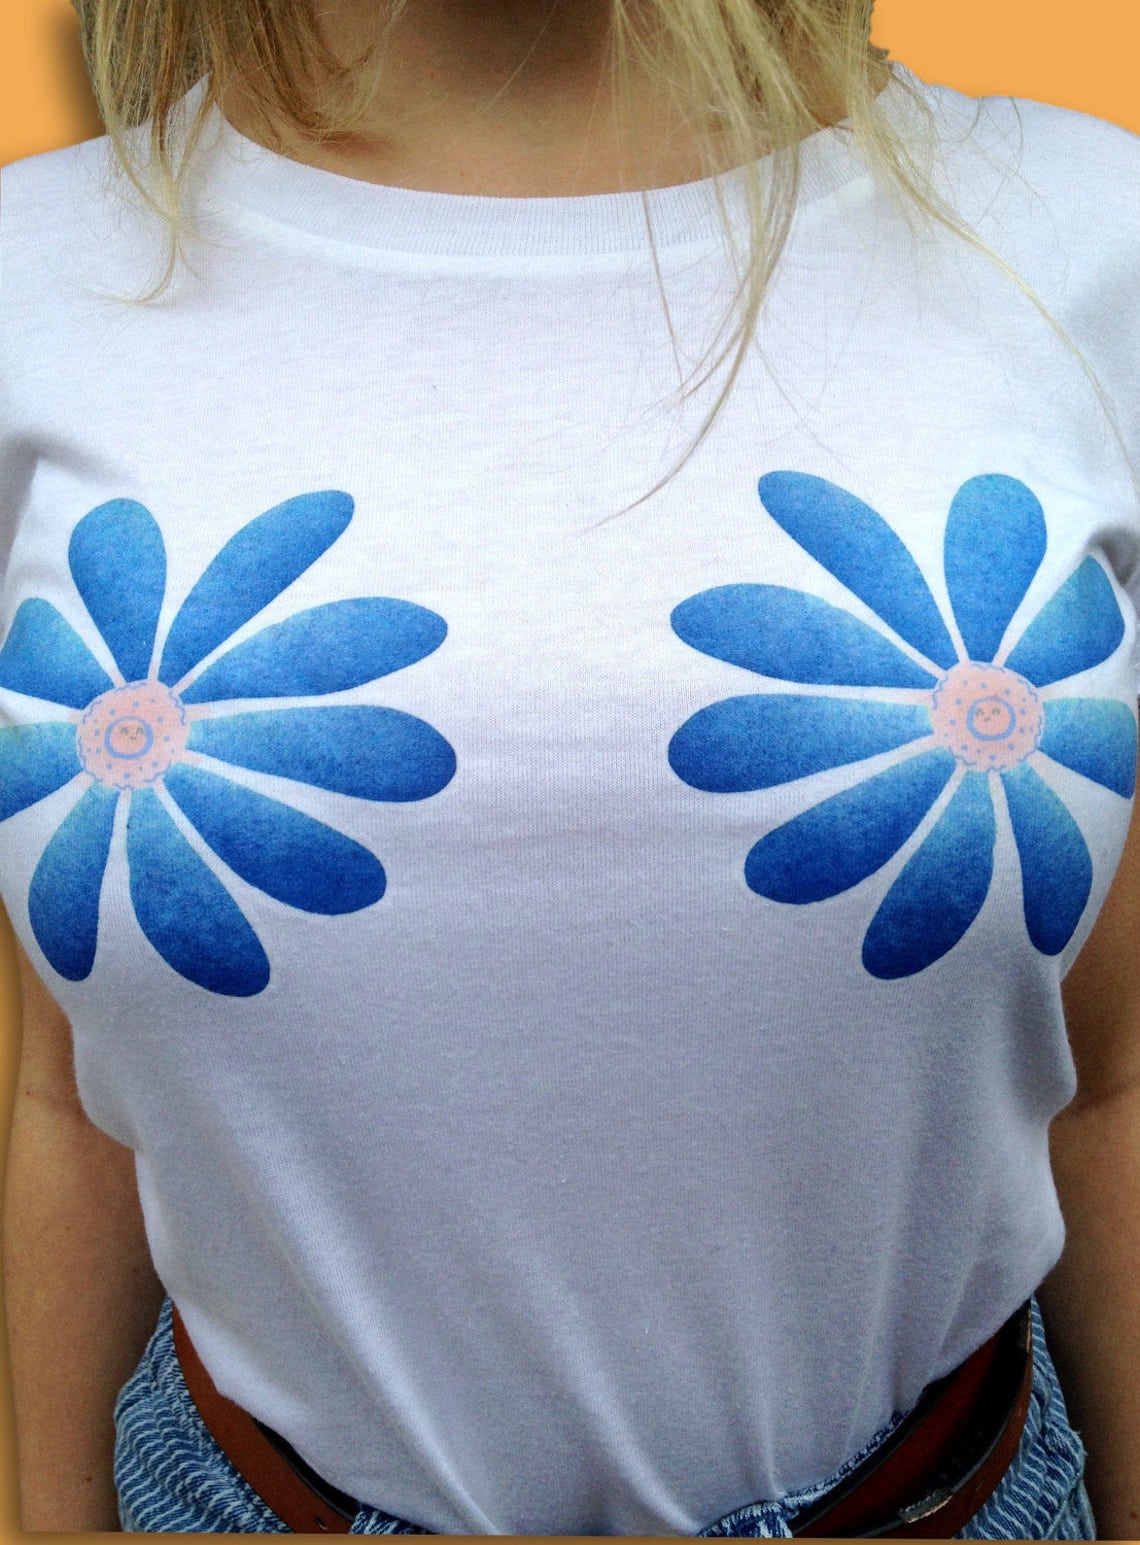 Flower Boobs Shirt Girl Power Feminist Shirt 70s Fashion - Etsy UK